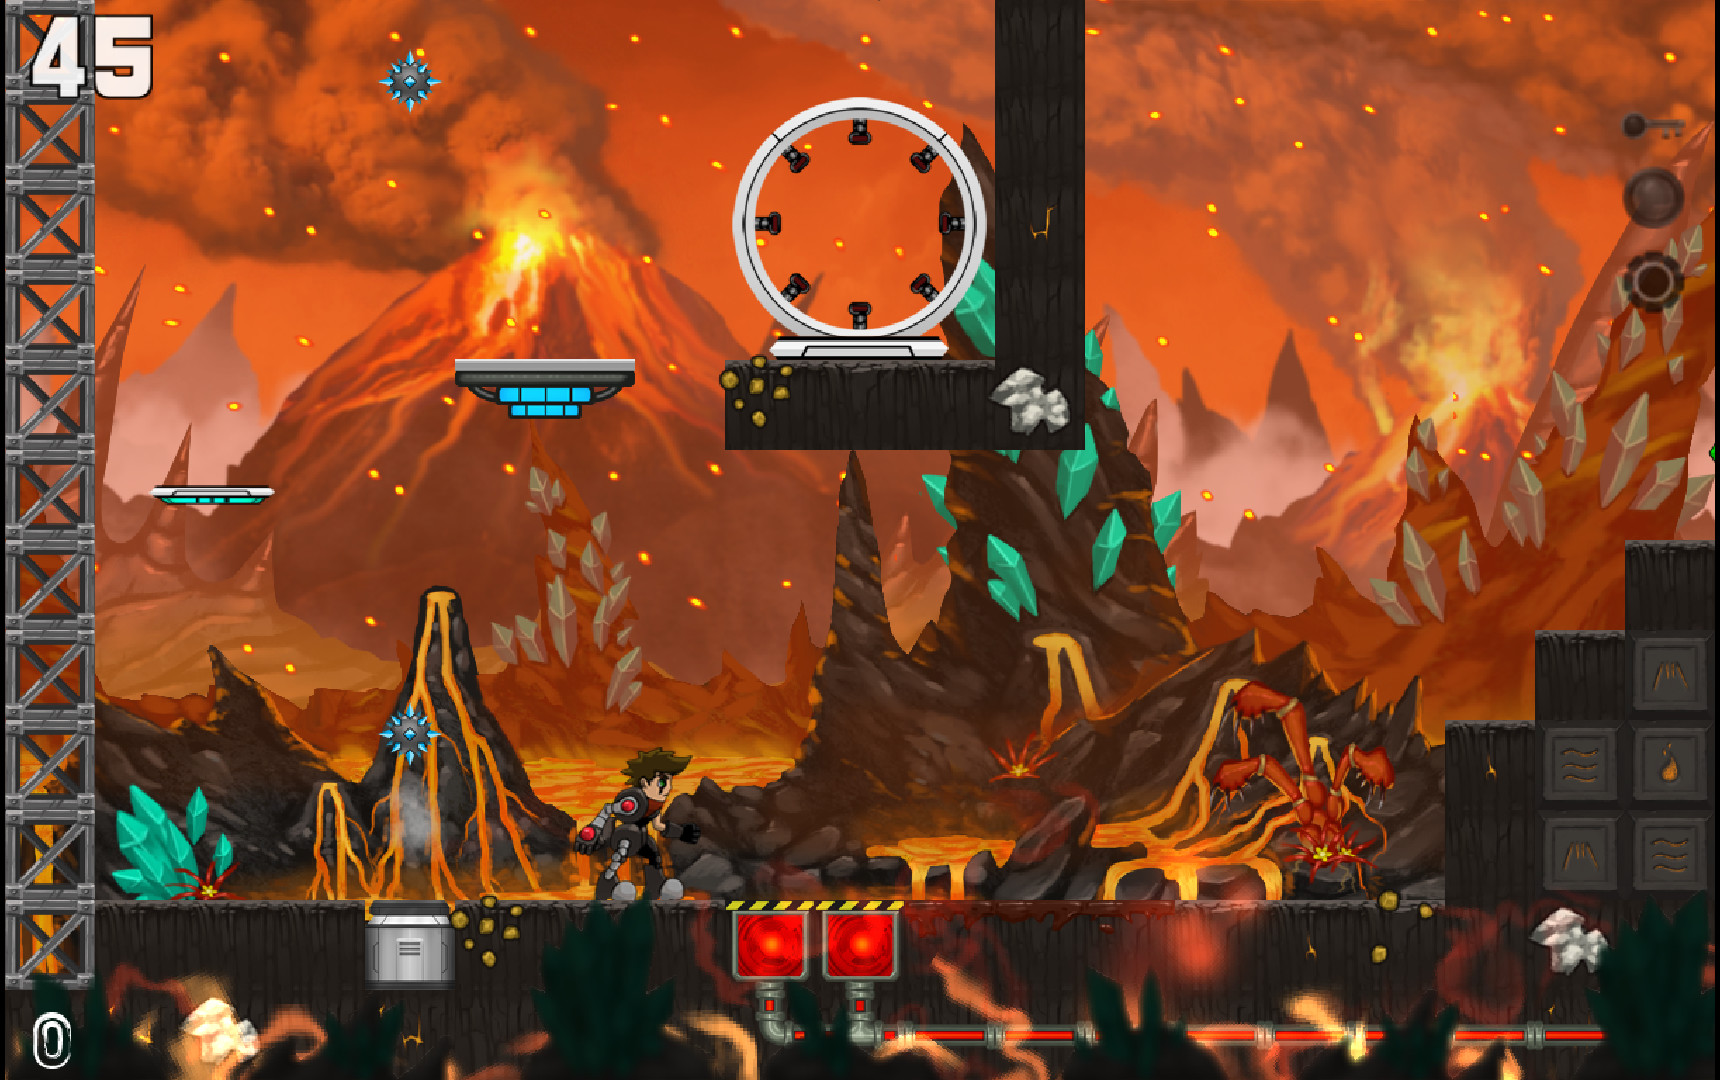 Aero's Quest screenshot